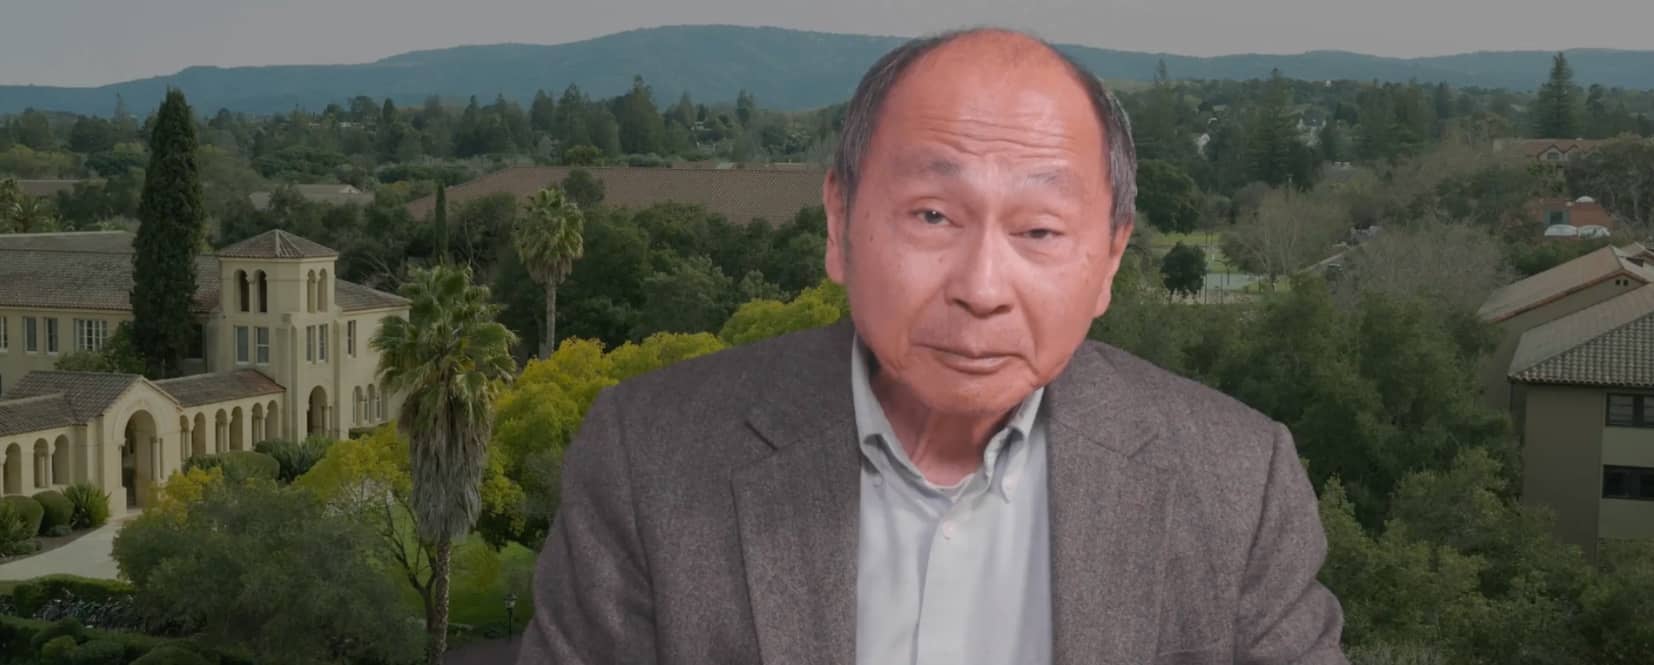 Screenshot of Francis Fukuyama from video